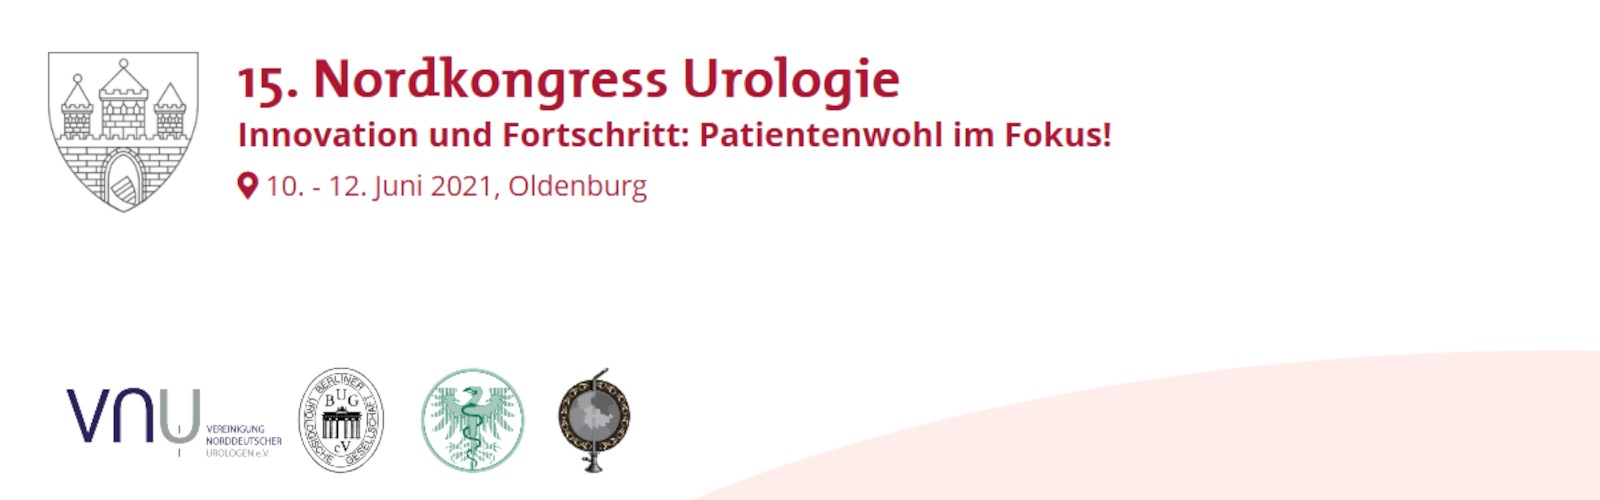 15. Nordkongress Urologie